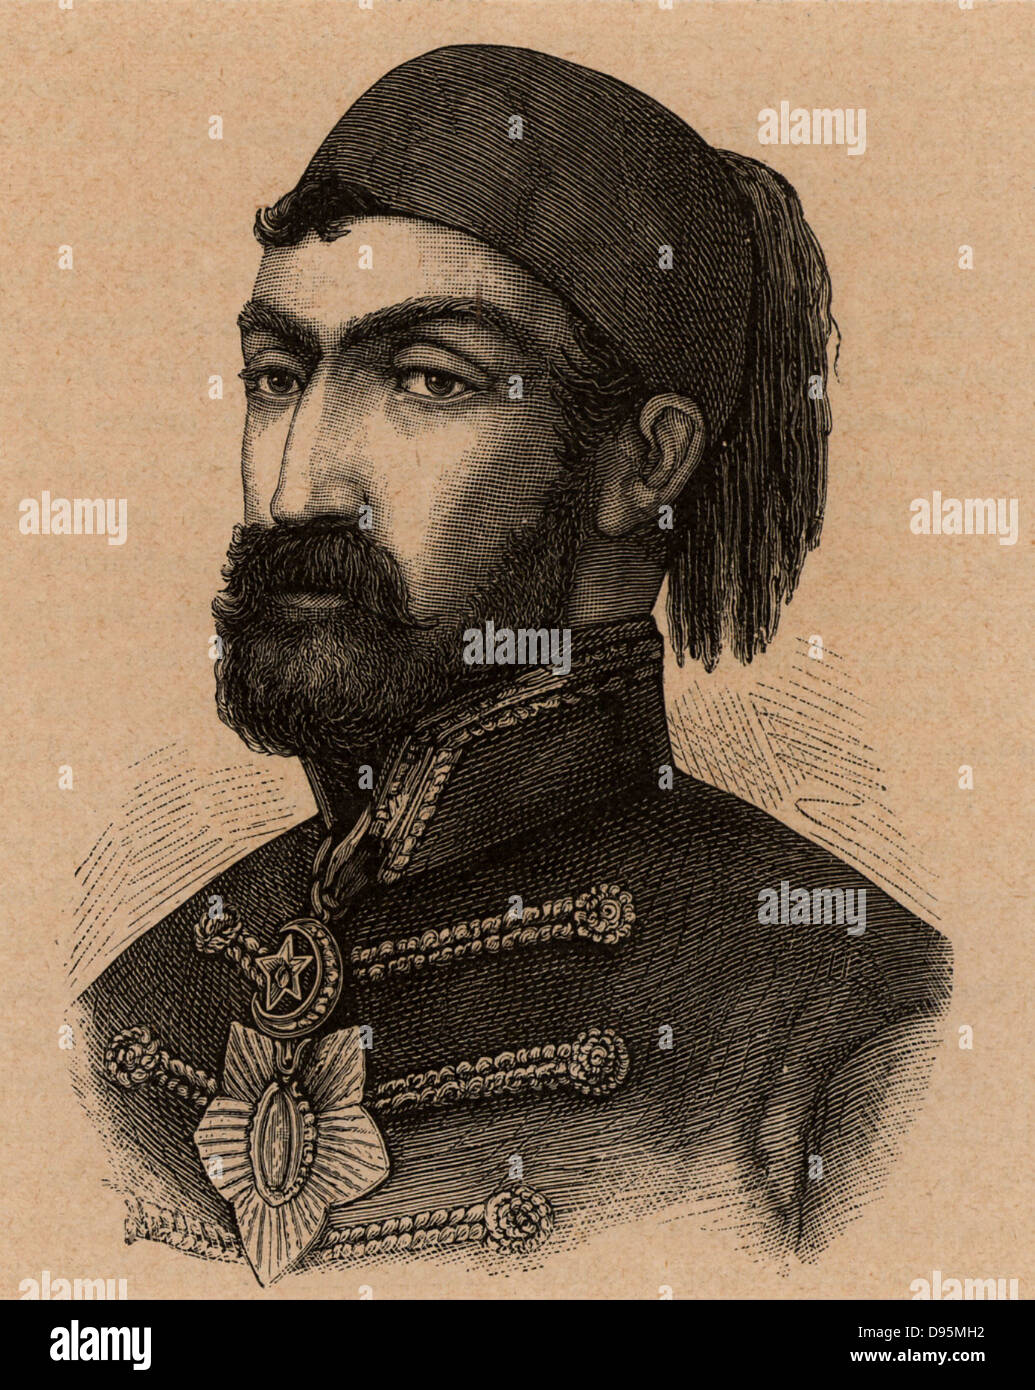 Omar Pasha (Michael Latas 1806-1871 geboren) Kroatisch-osmanischen Allgemeine geboren. Die türkischen Truppen während der Krim (Russisch-türkischen) Krieg 1853-1856 geboten. Gravur. Stockfoto